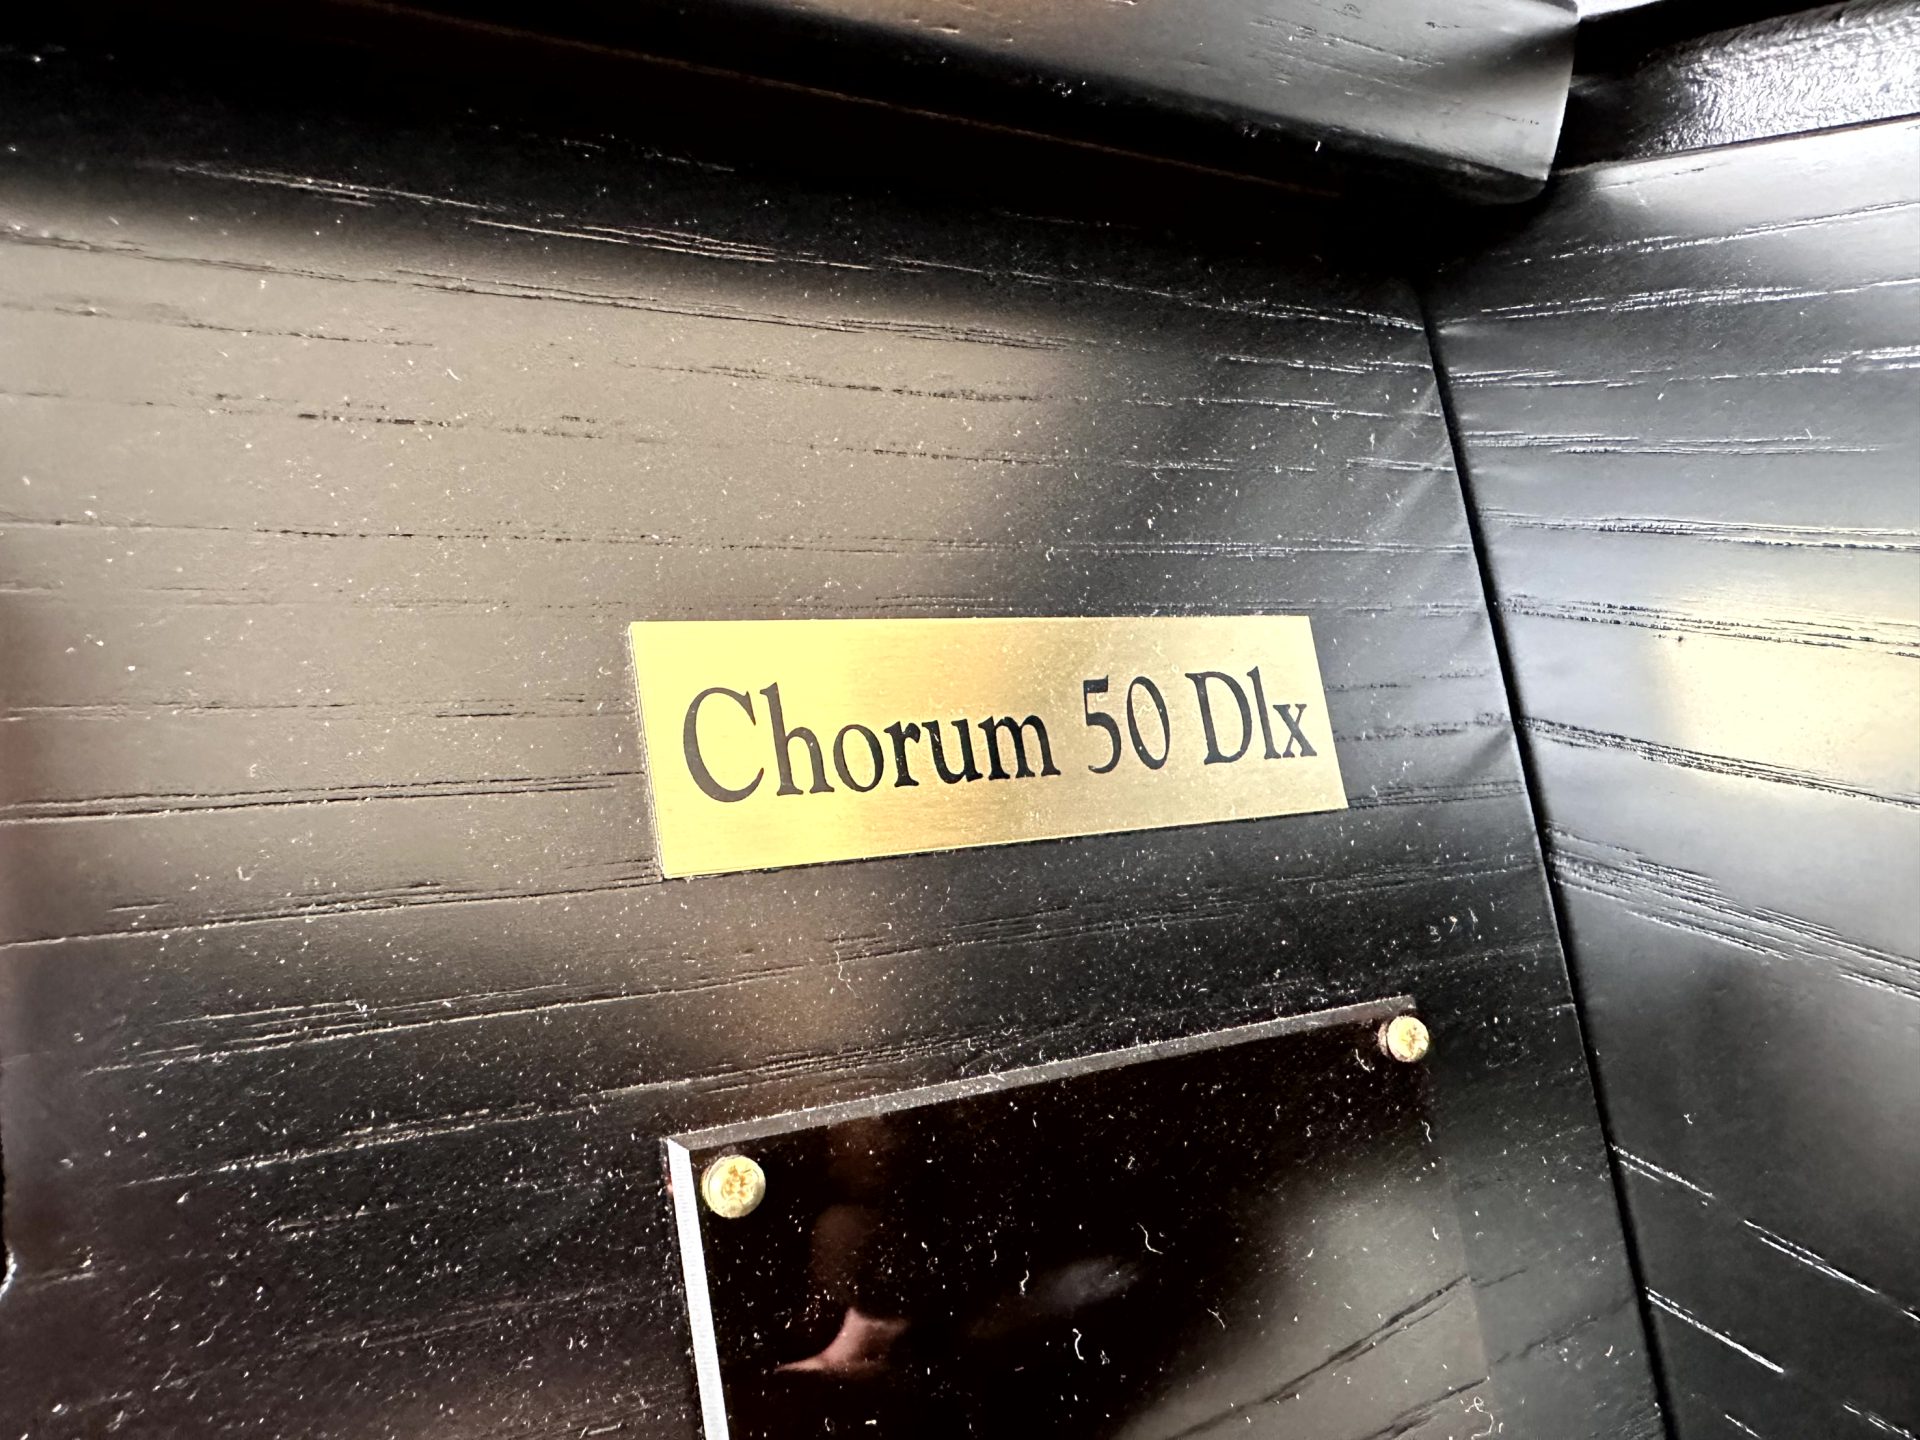 Viscount Chorum S50 DLX Andante Orgels